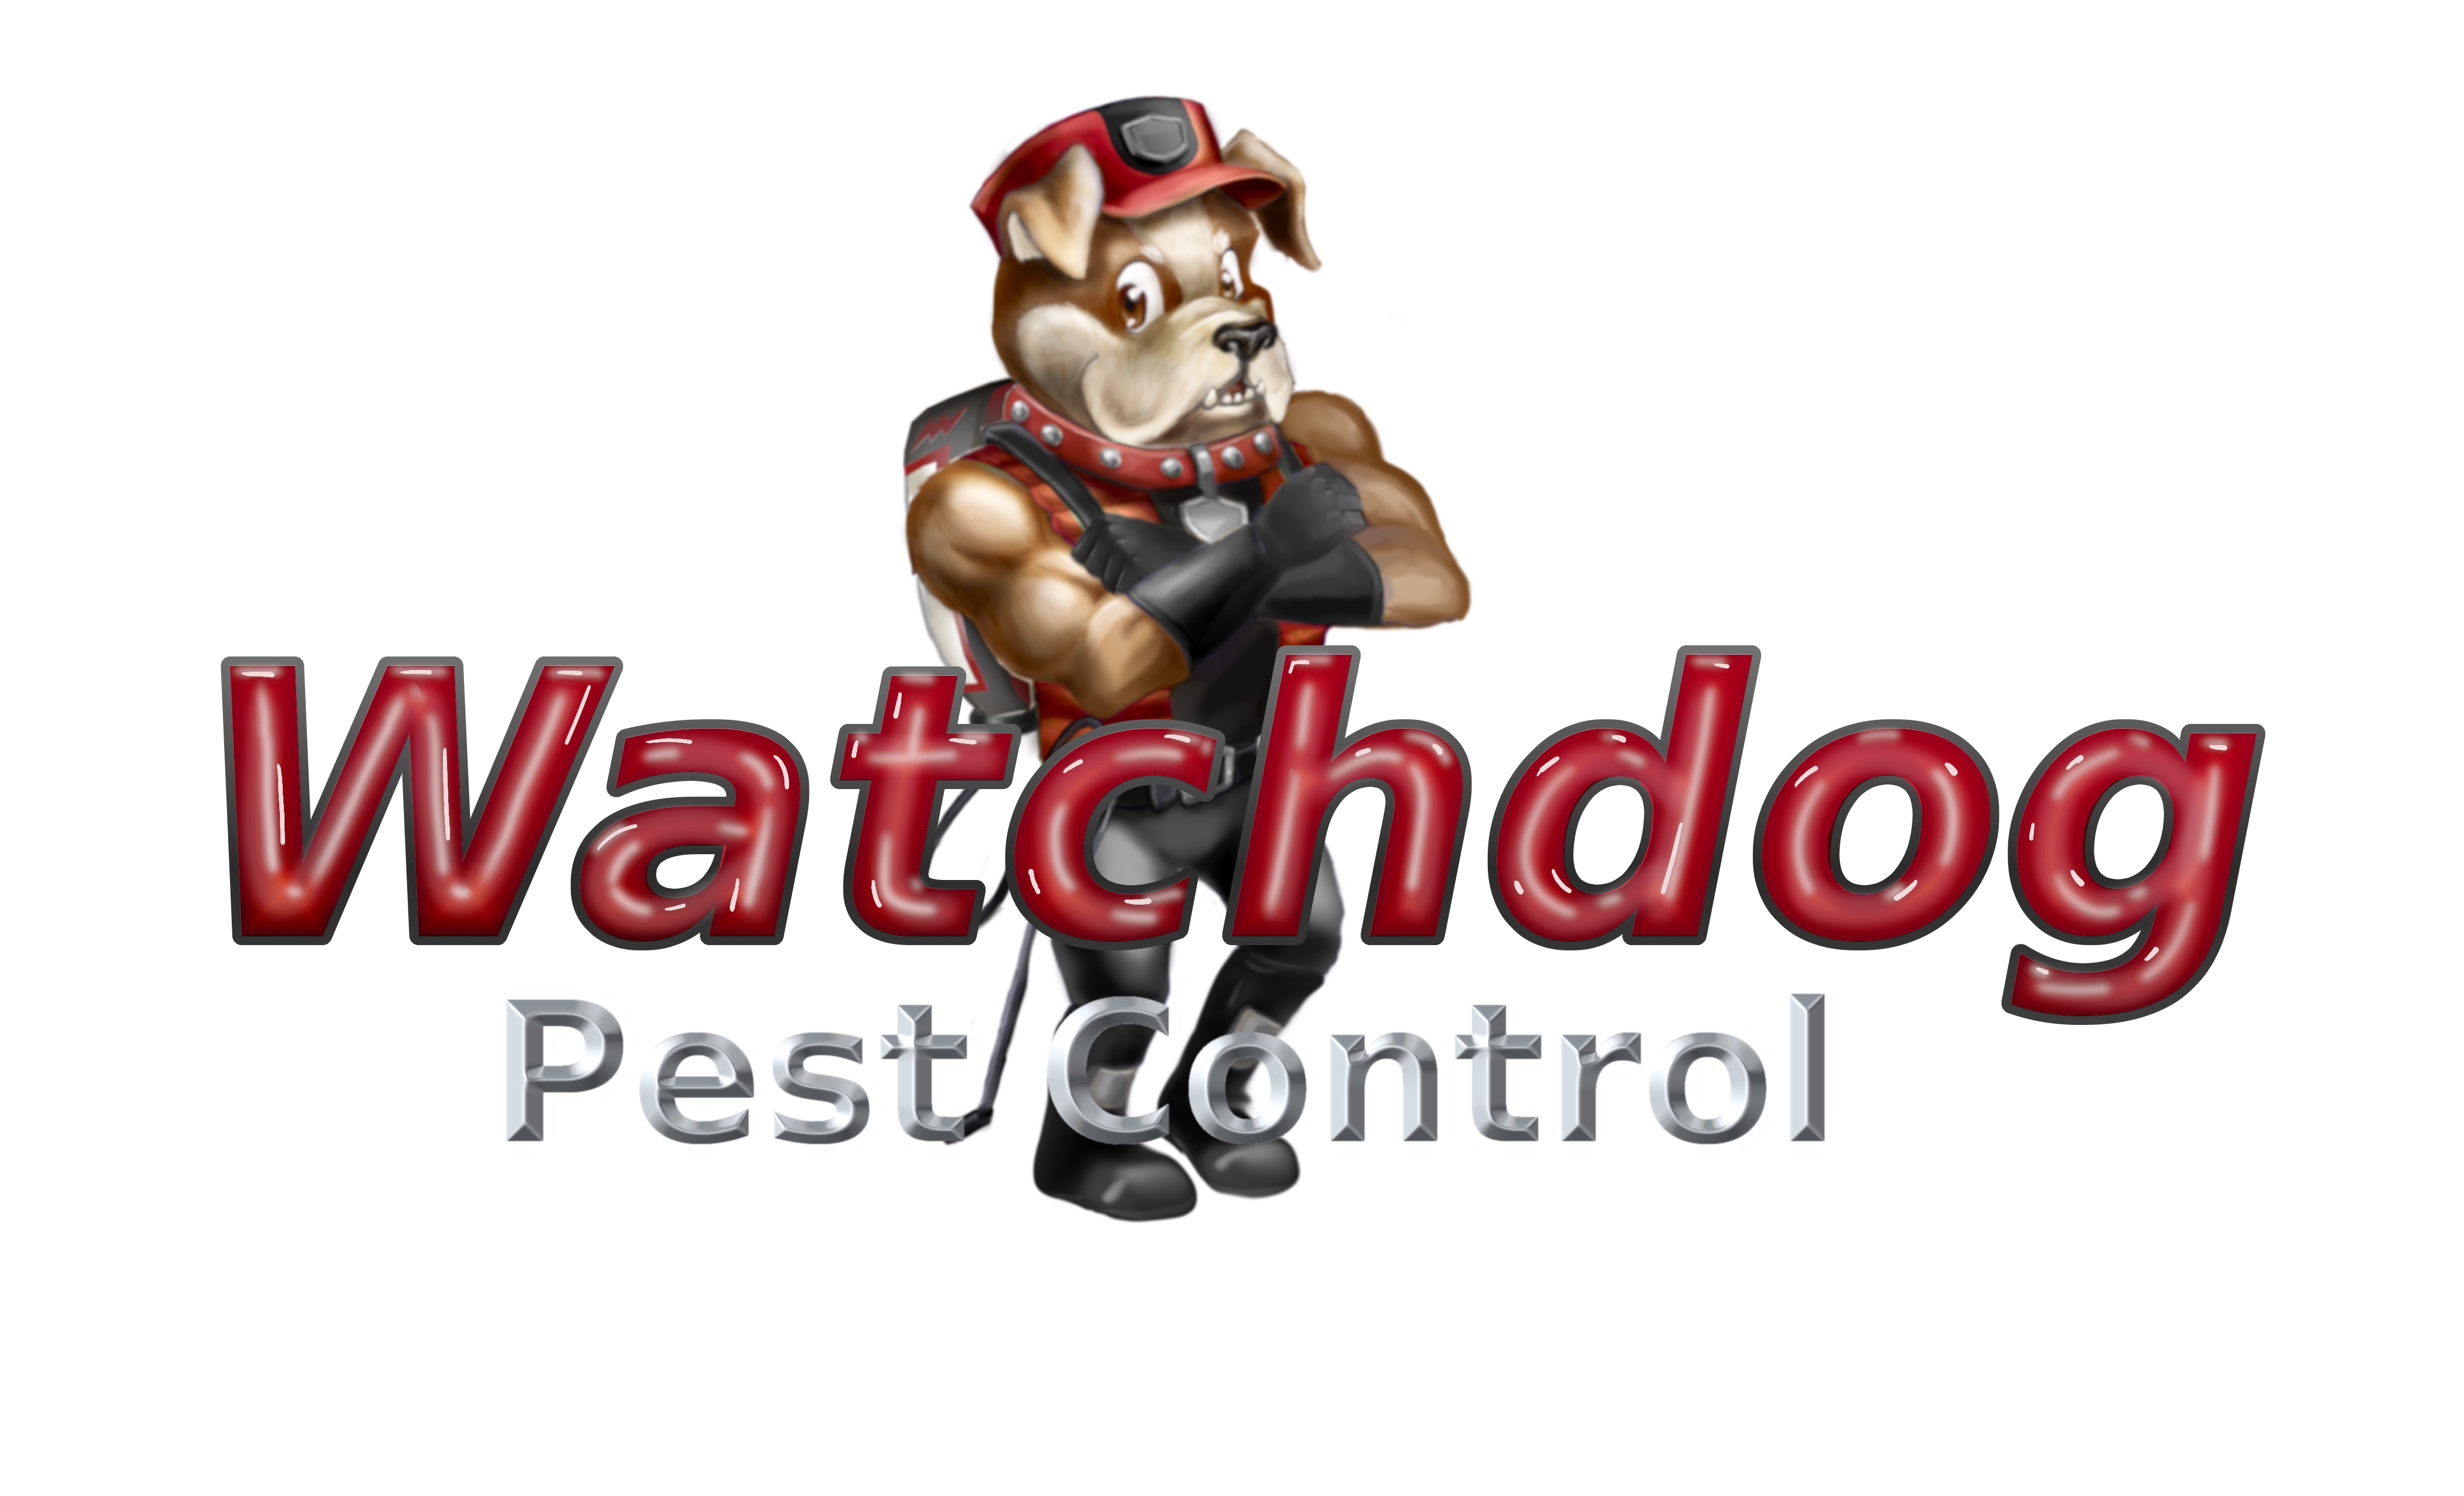 WatchdogPest